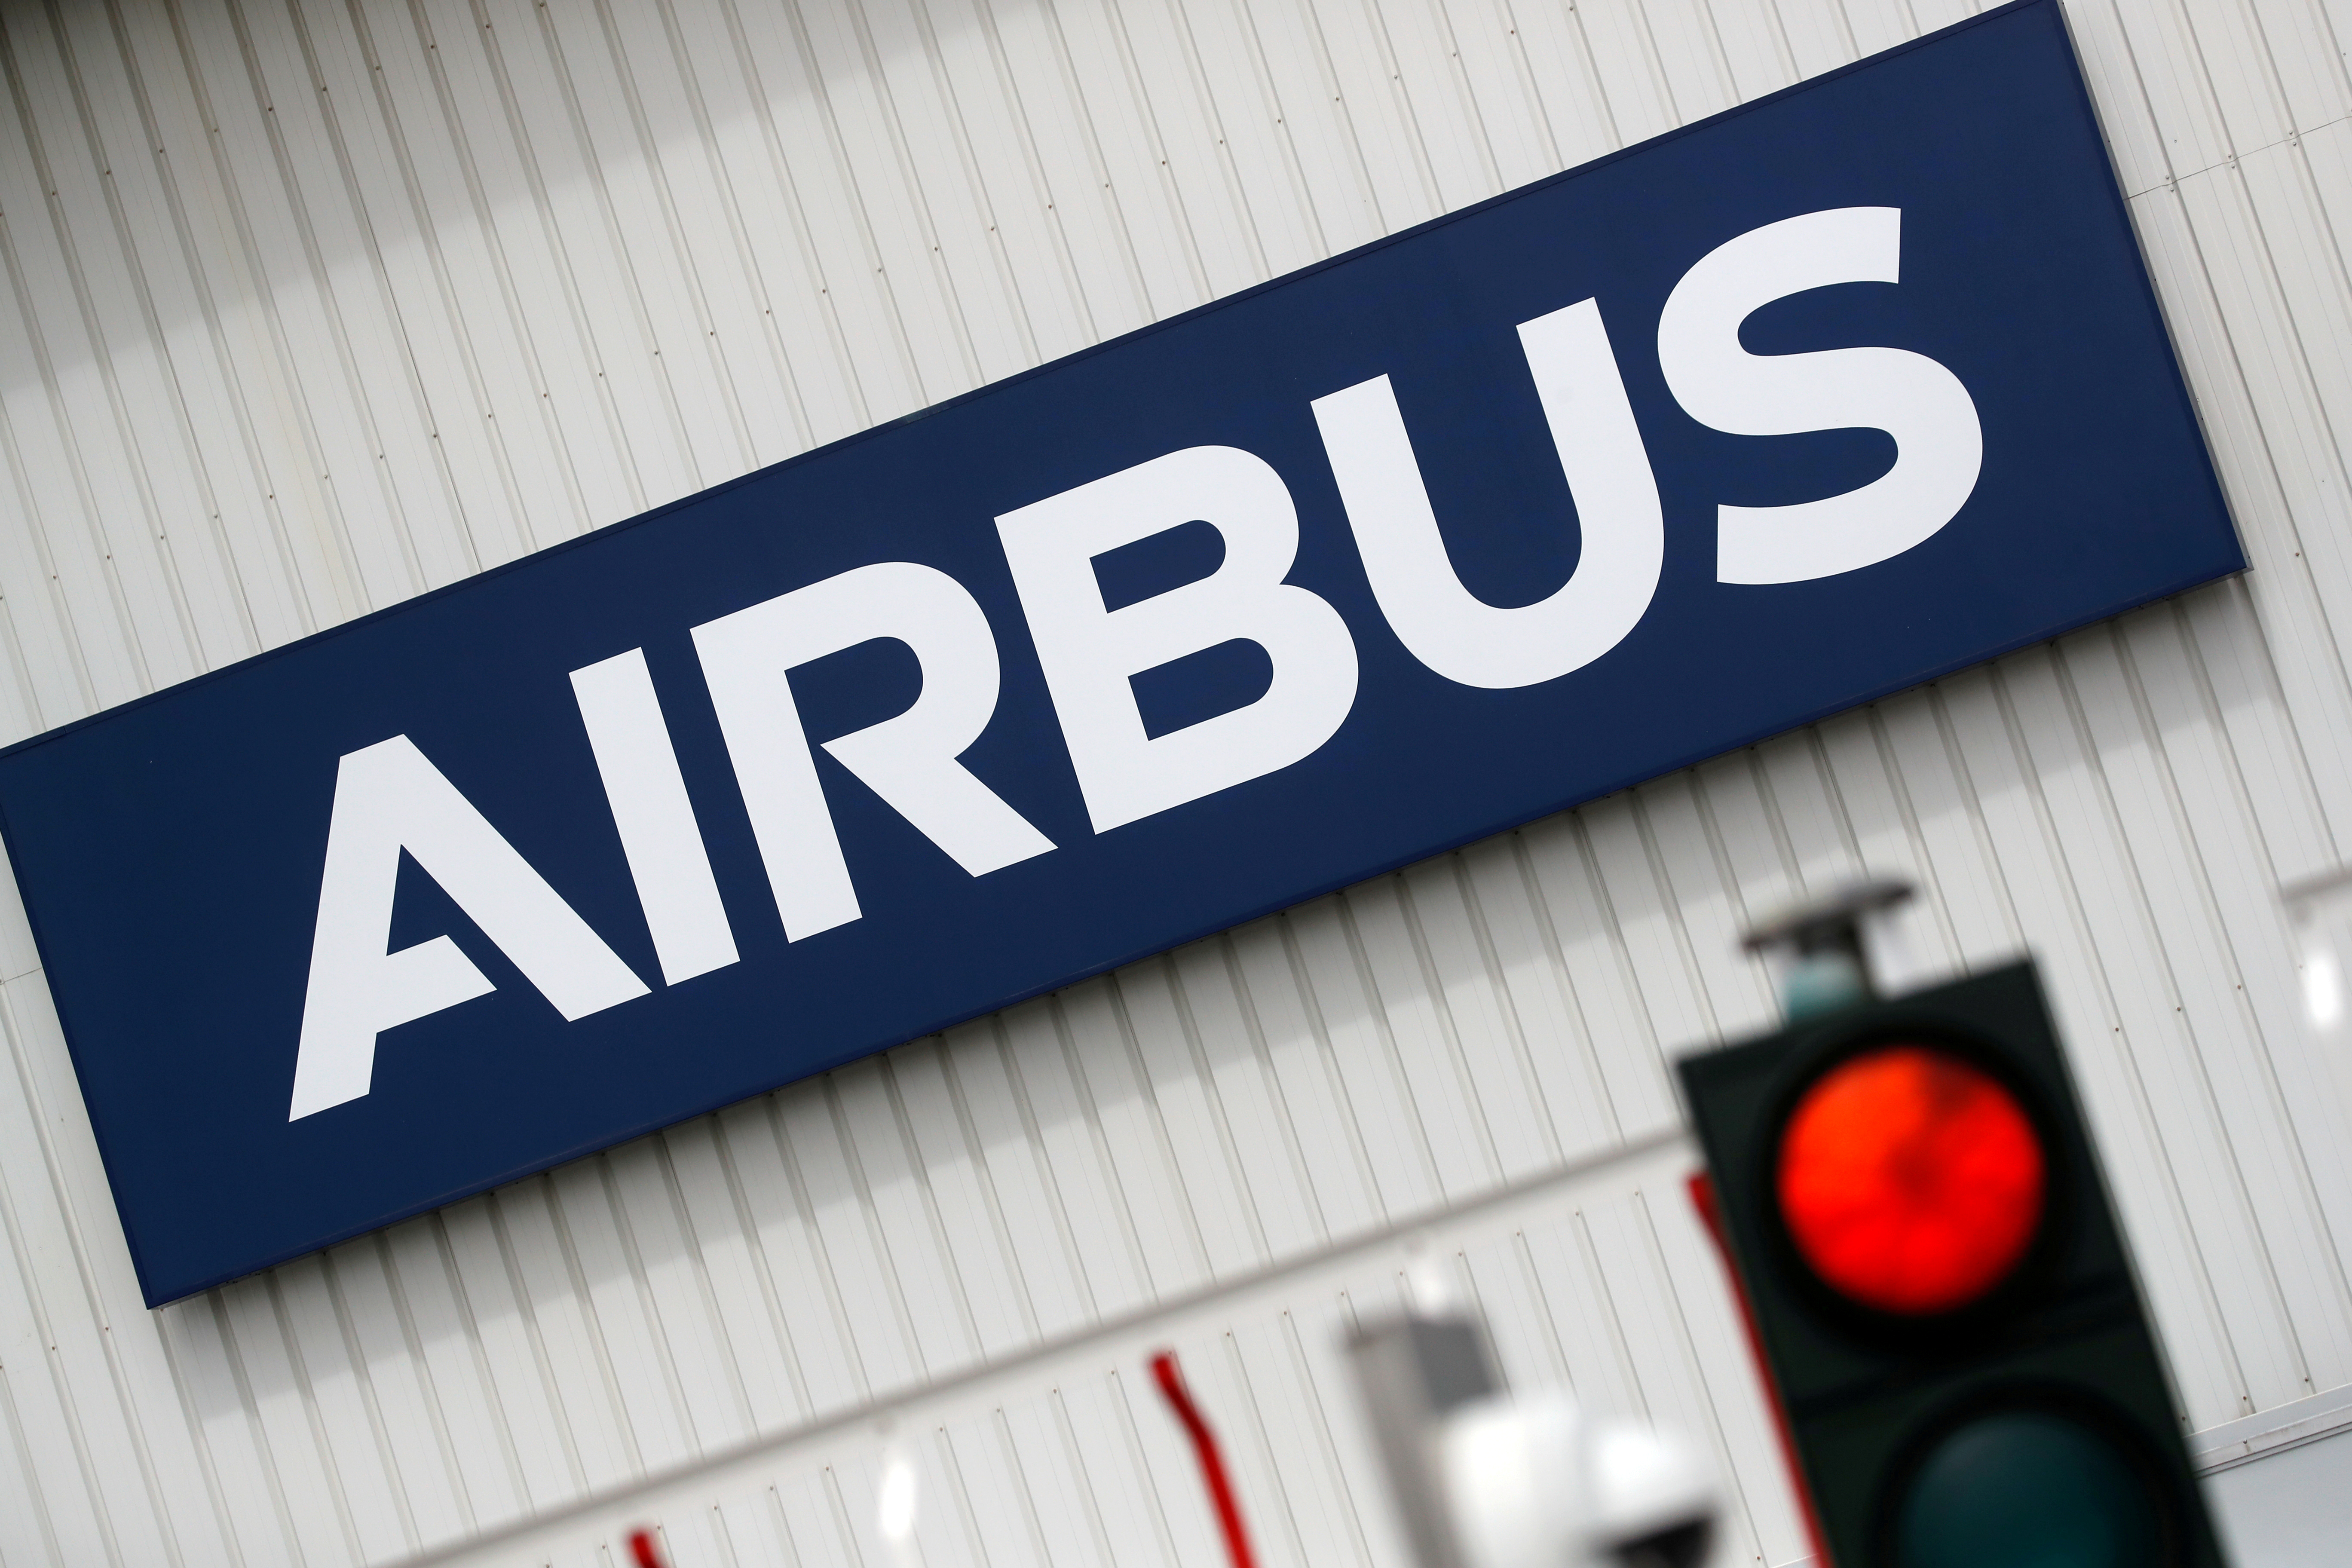 La UE pide a EEUU que retire los aranceles en la disputa por Airbus y Boeing -FT